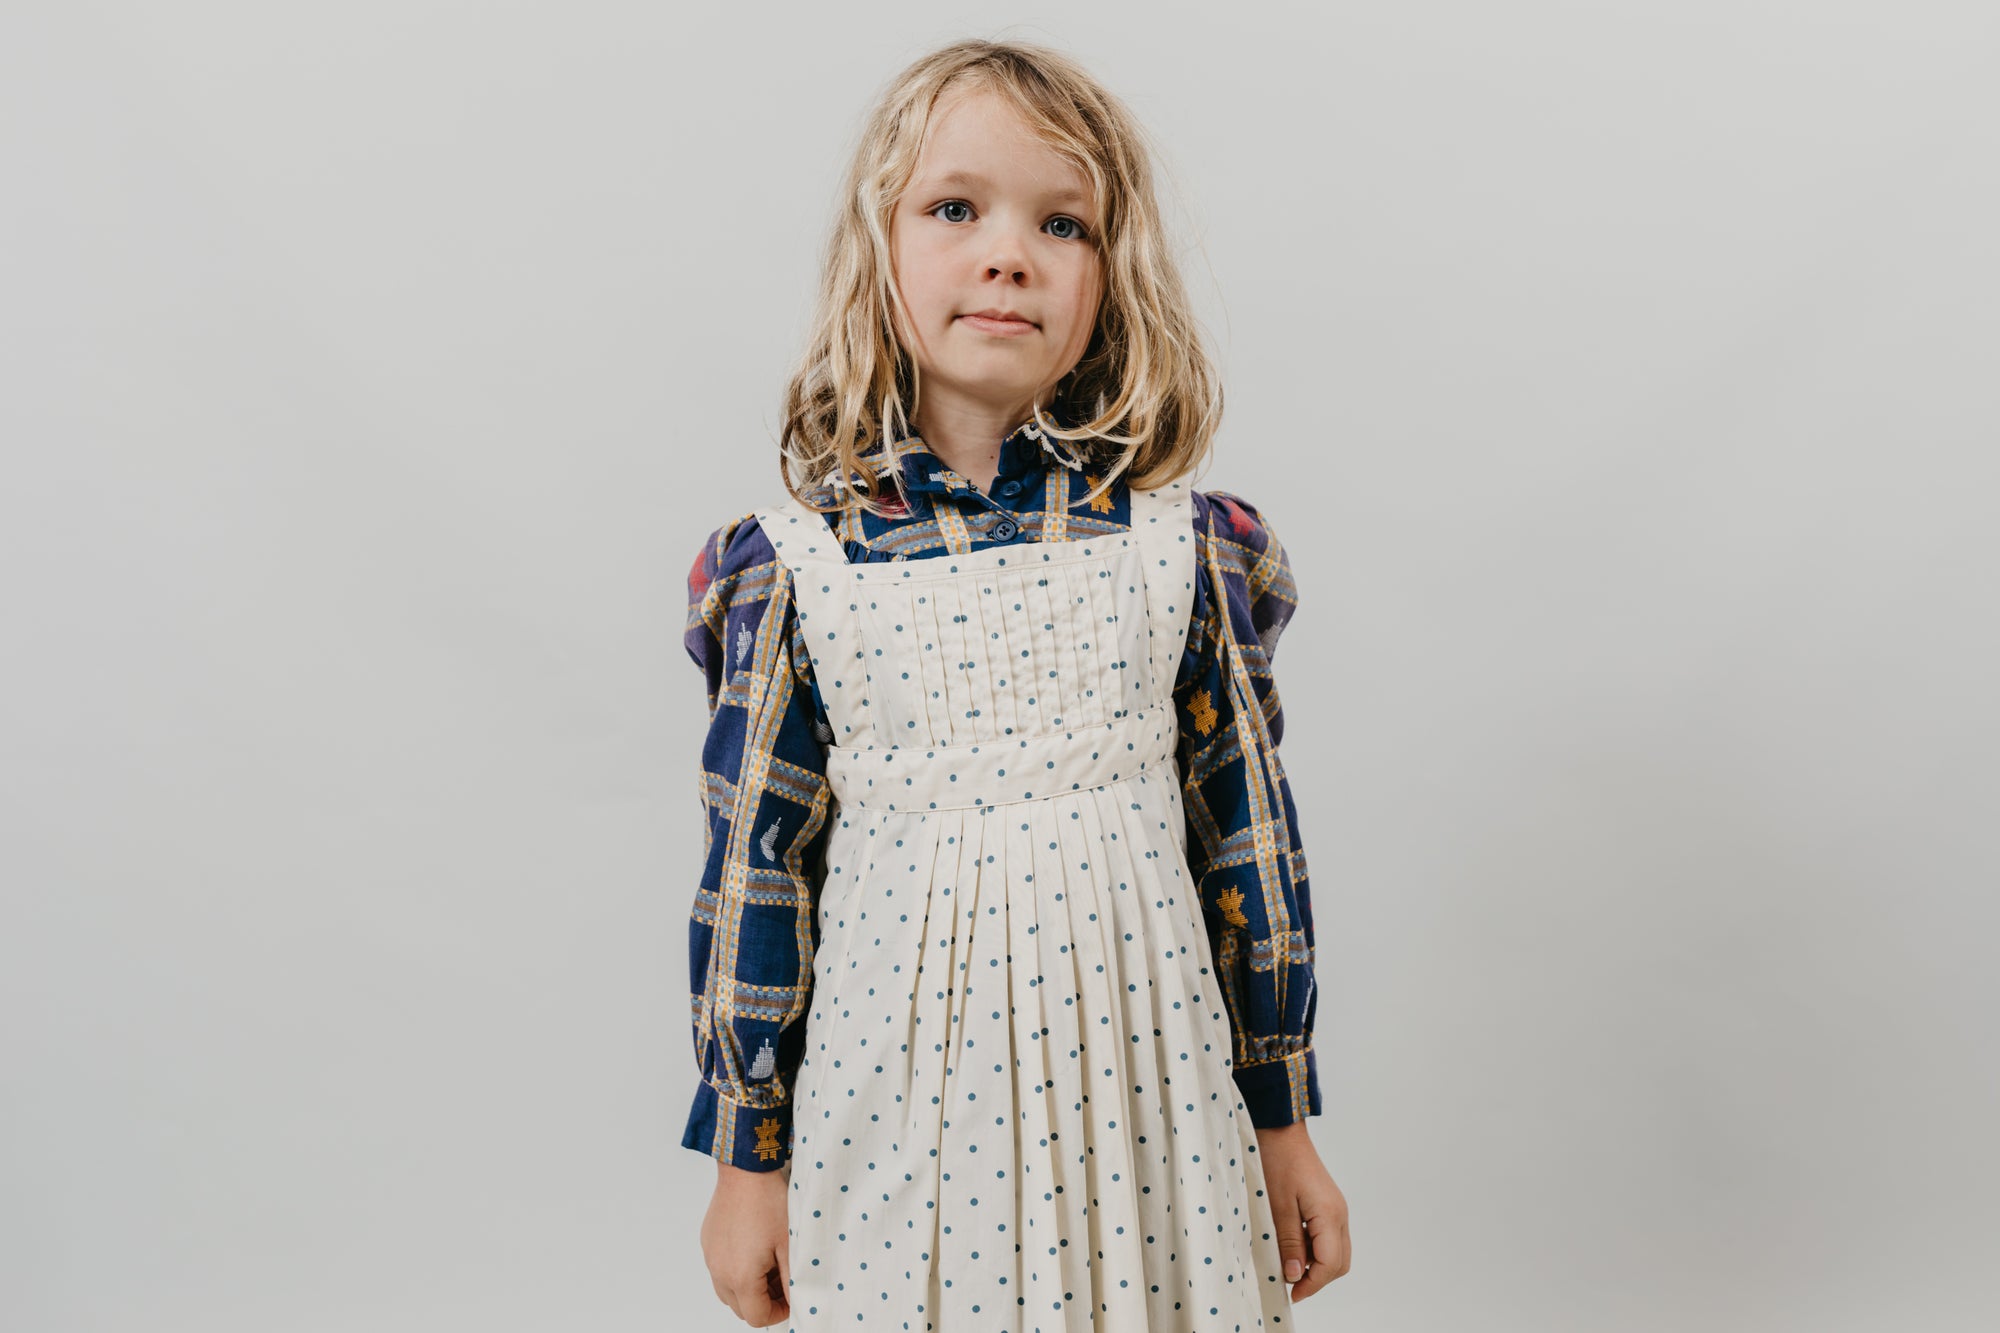 213 Child's Prairie Dress & Pinafore